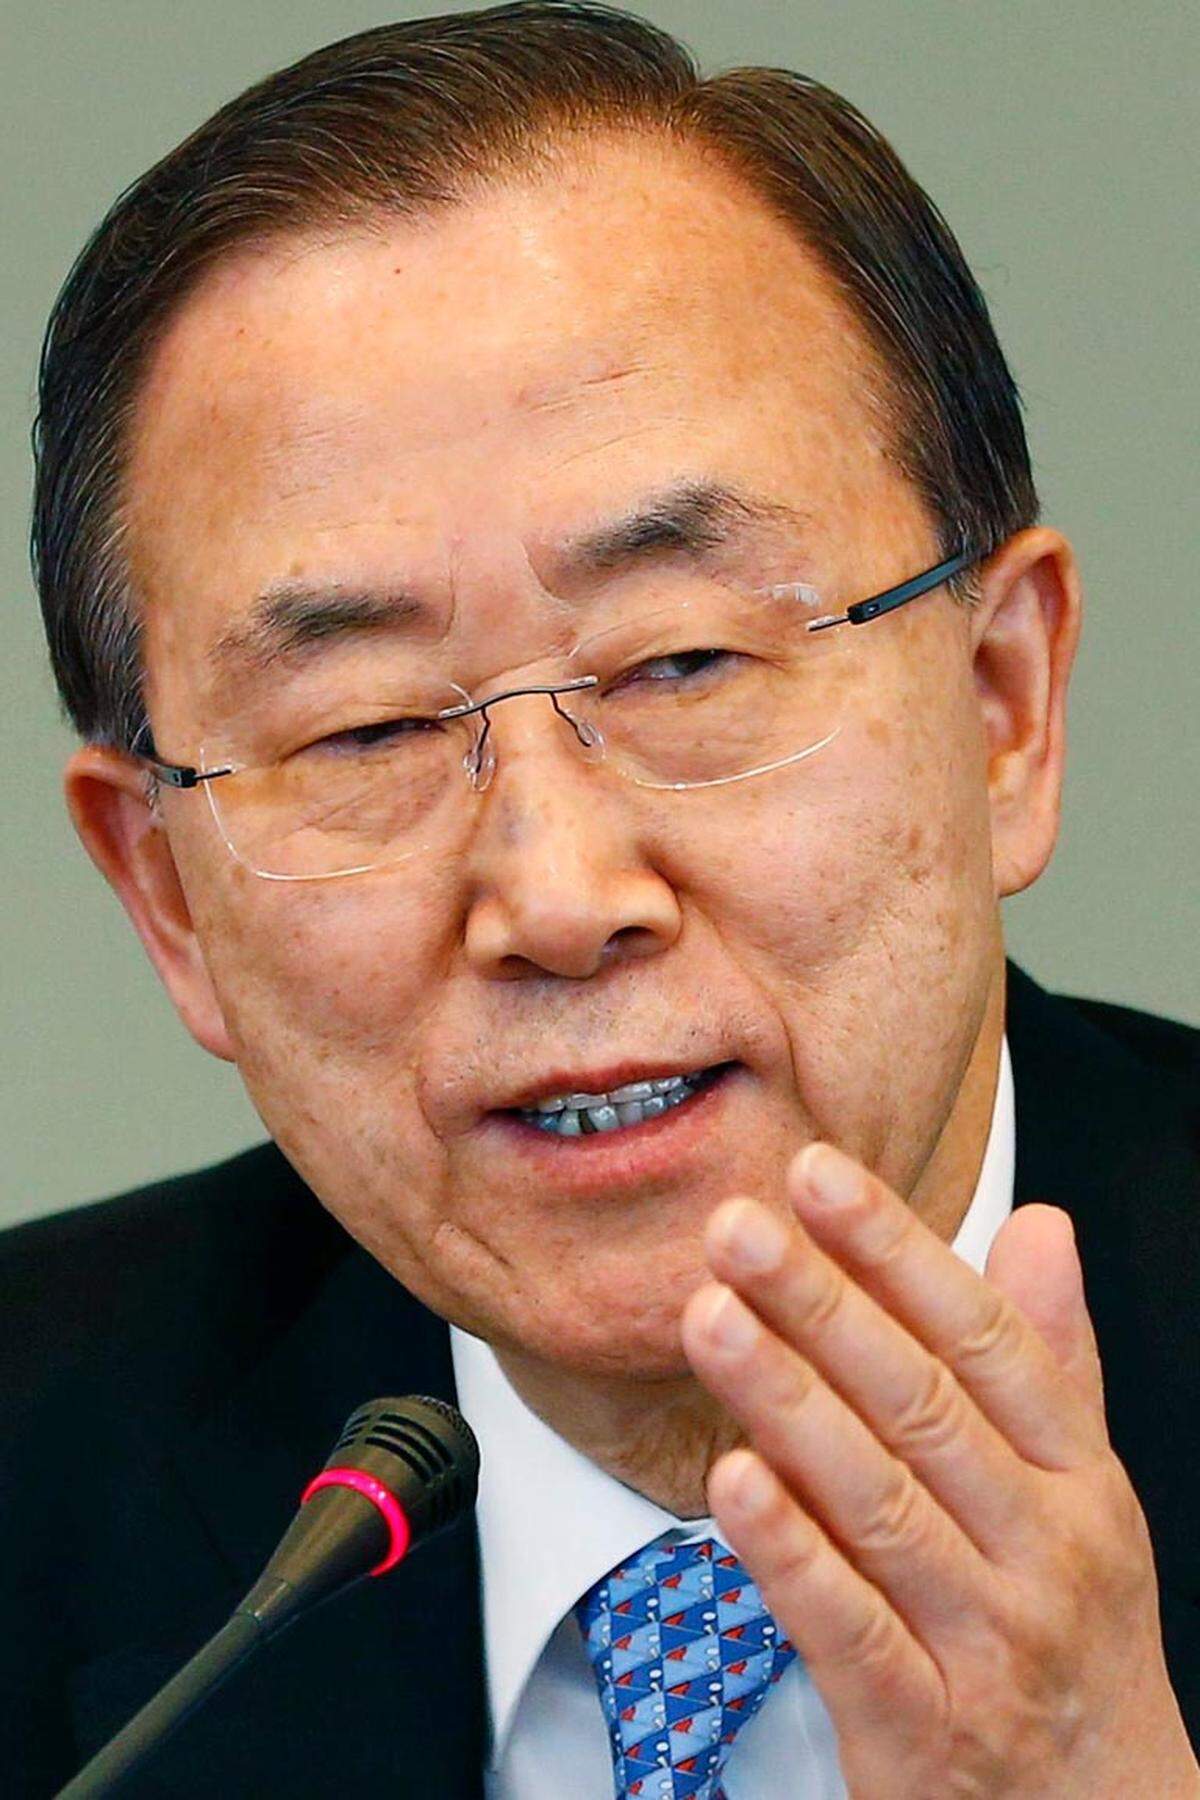 "Wir werden ihre großartige Führungsstärke sehr vermissen."UNO-Generalsekretär Ban Ki-moon.